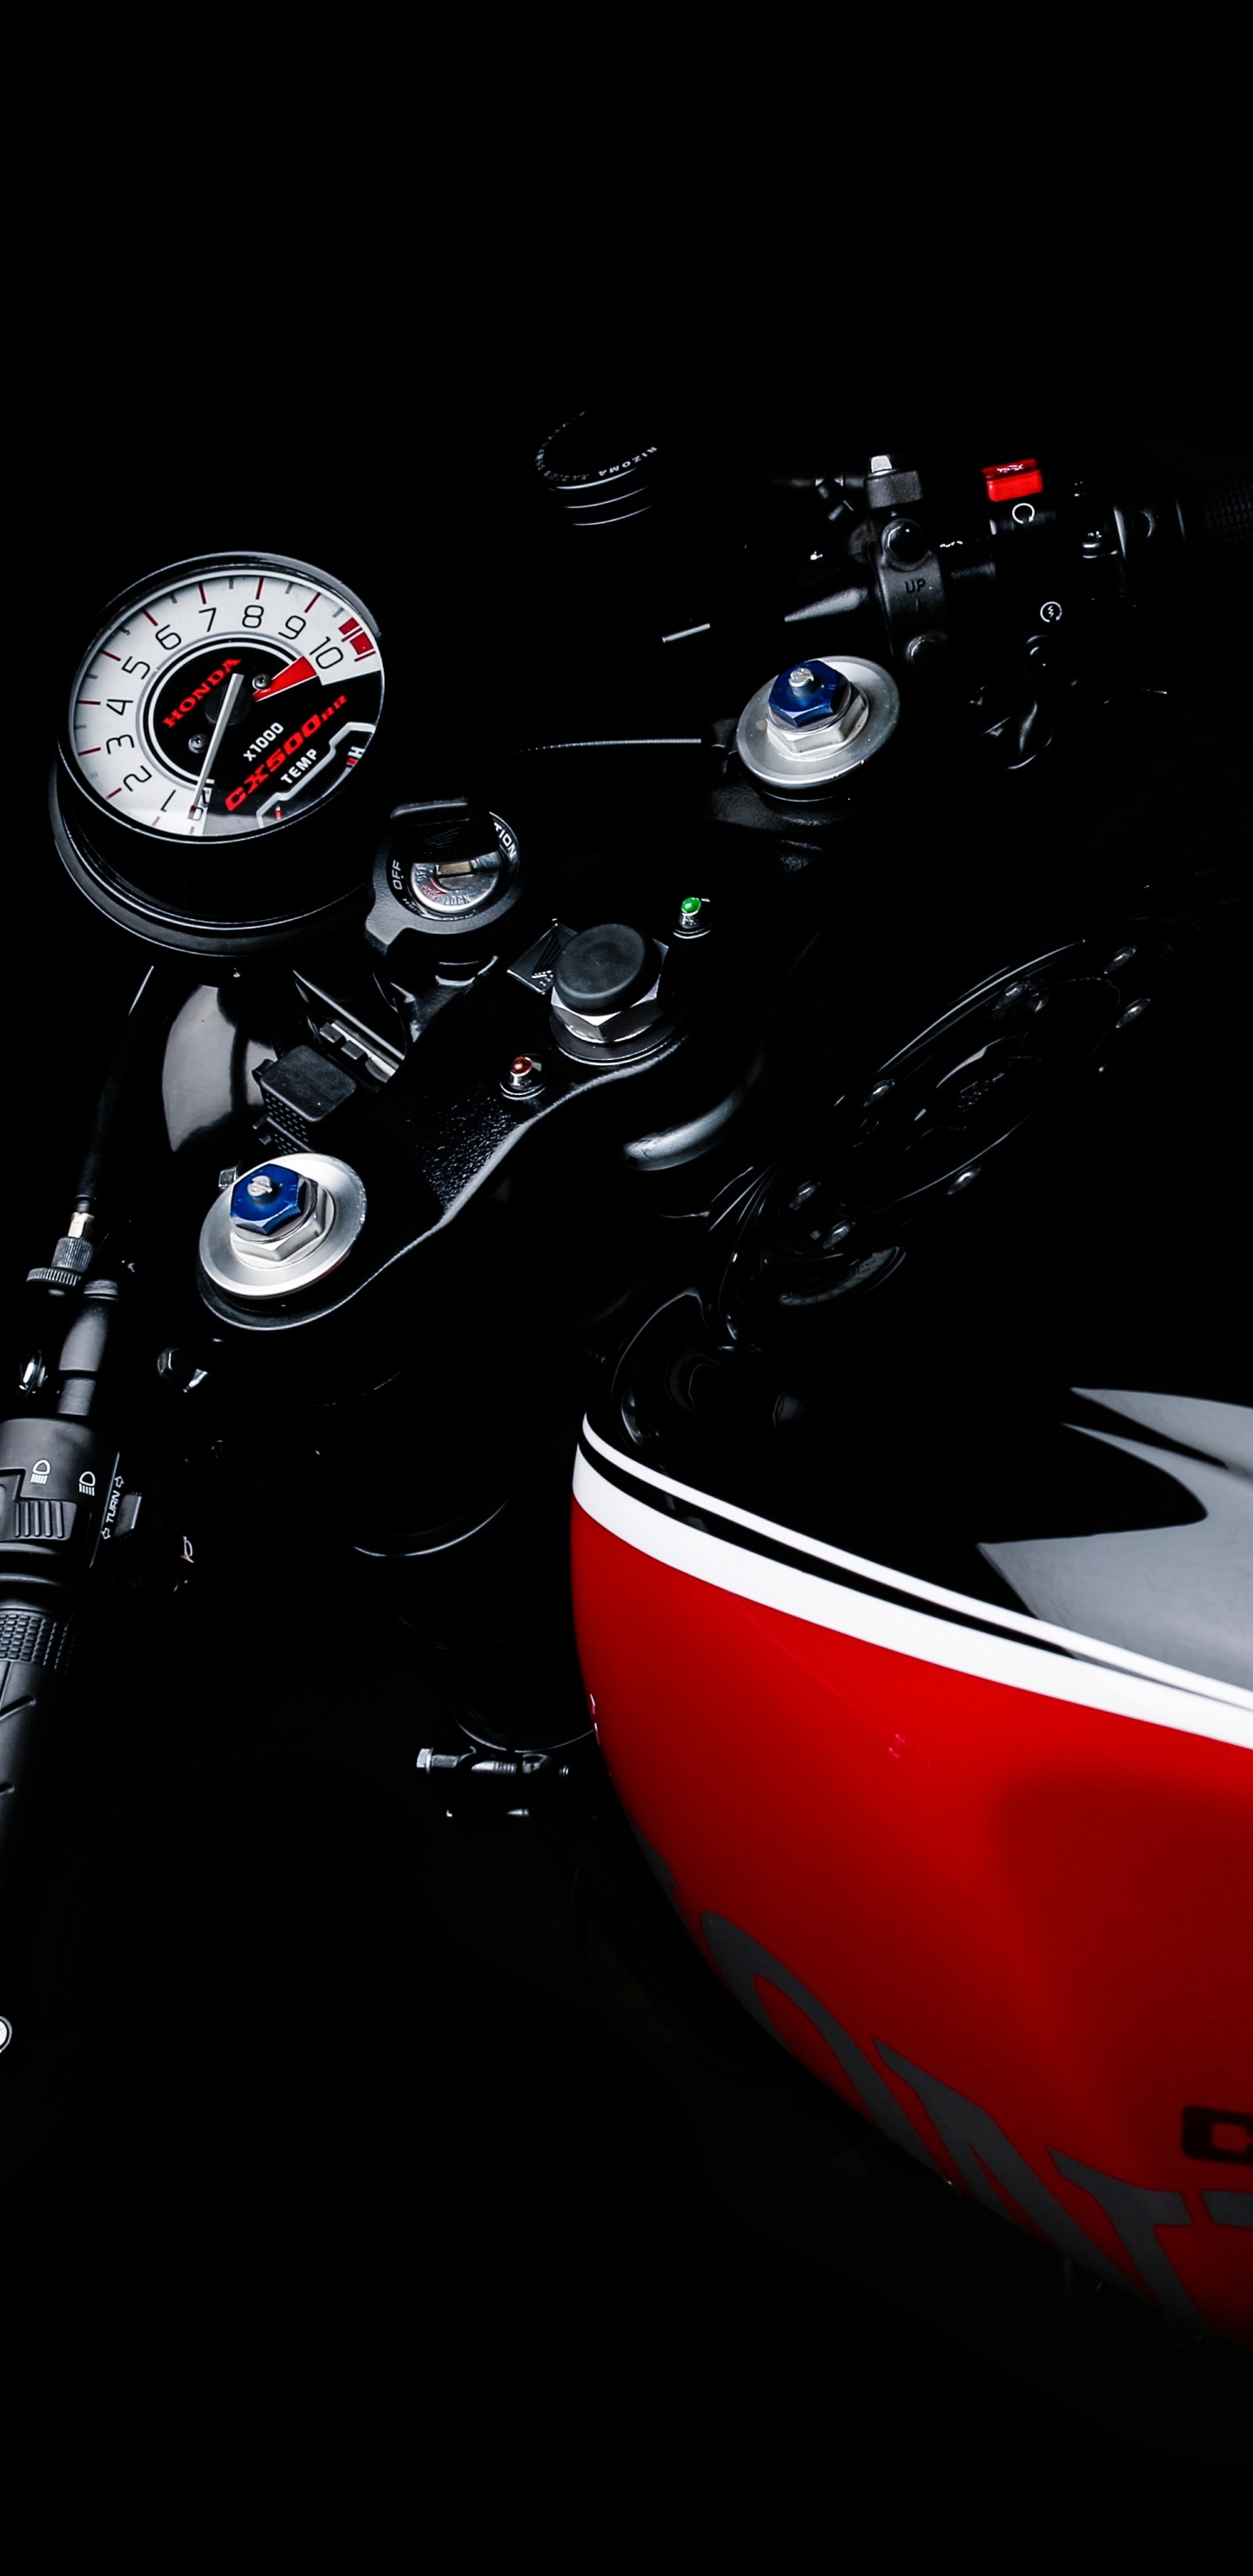 Motocicleta Honda Roja y Negra. Wallpaper in 1440x2960 Resolution